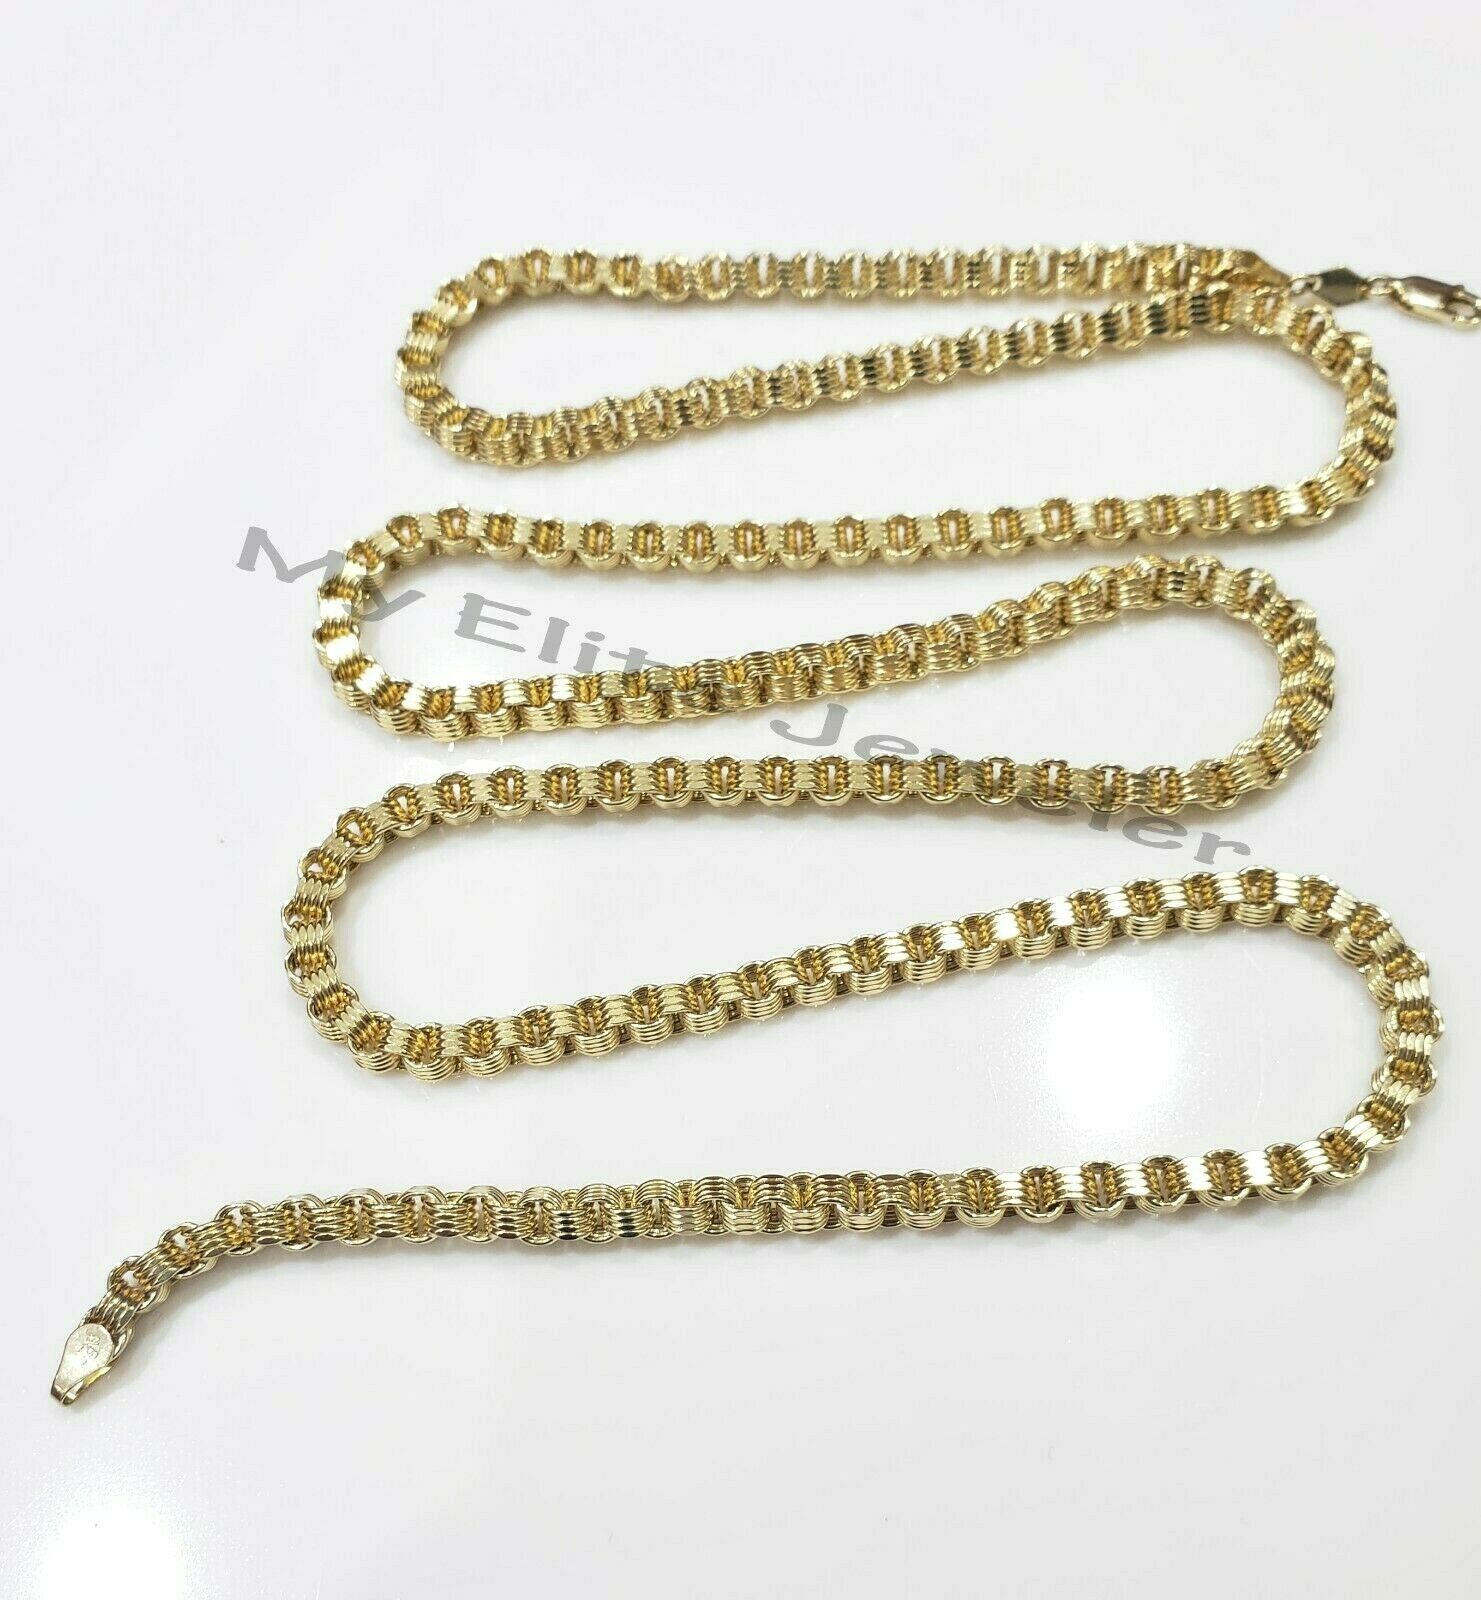 Eli Rope Chain Bracelet (5MM)